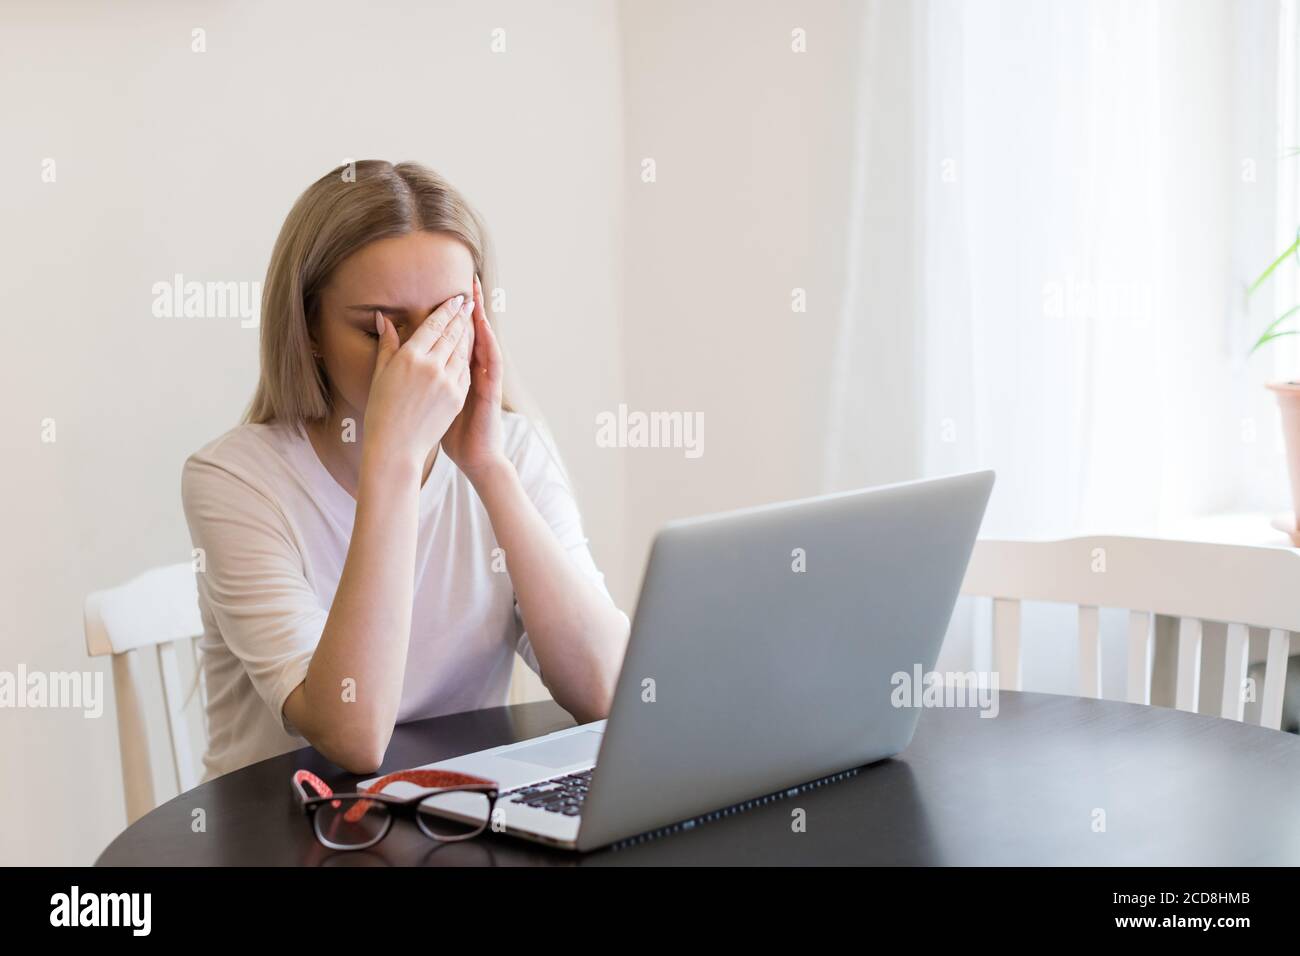 Fatigue, travail excessif, fatigue. Une femme épuisée a un mal de tête après avoir travaillé sur un ordinateur portable, en touchant ses yeux, tente de se concentrer, s'assoit à table Banque D'Images